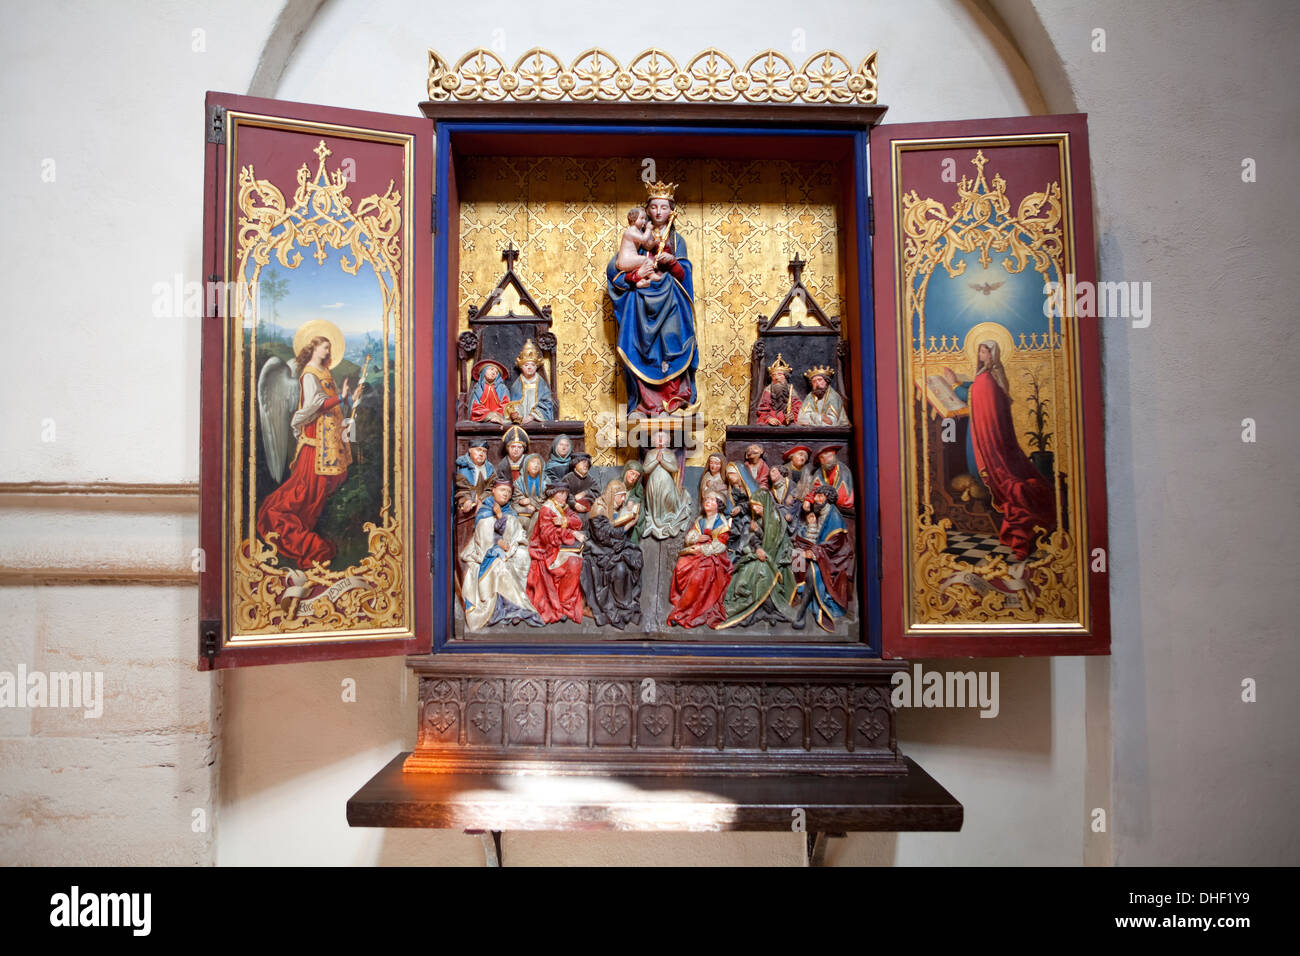 Altar de la Virgen María, c. 1500, el monasterio cisterciense de Loccum, Baja Sajonia, Alemania Foto de stock